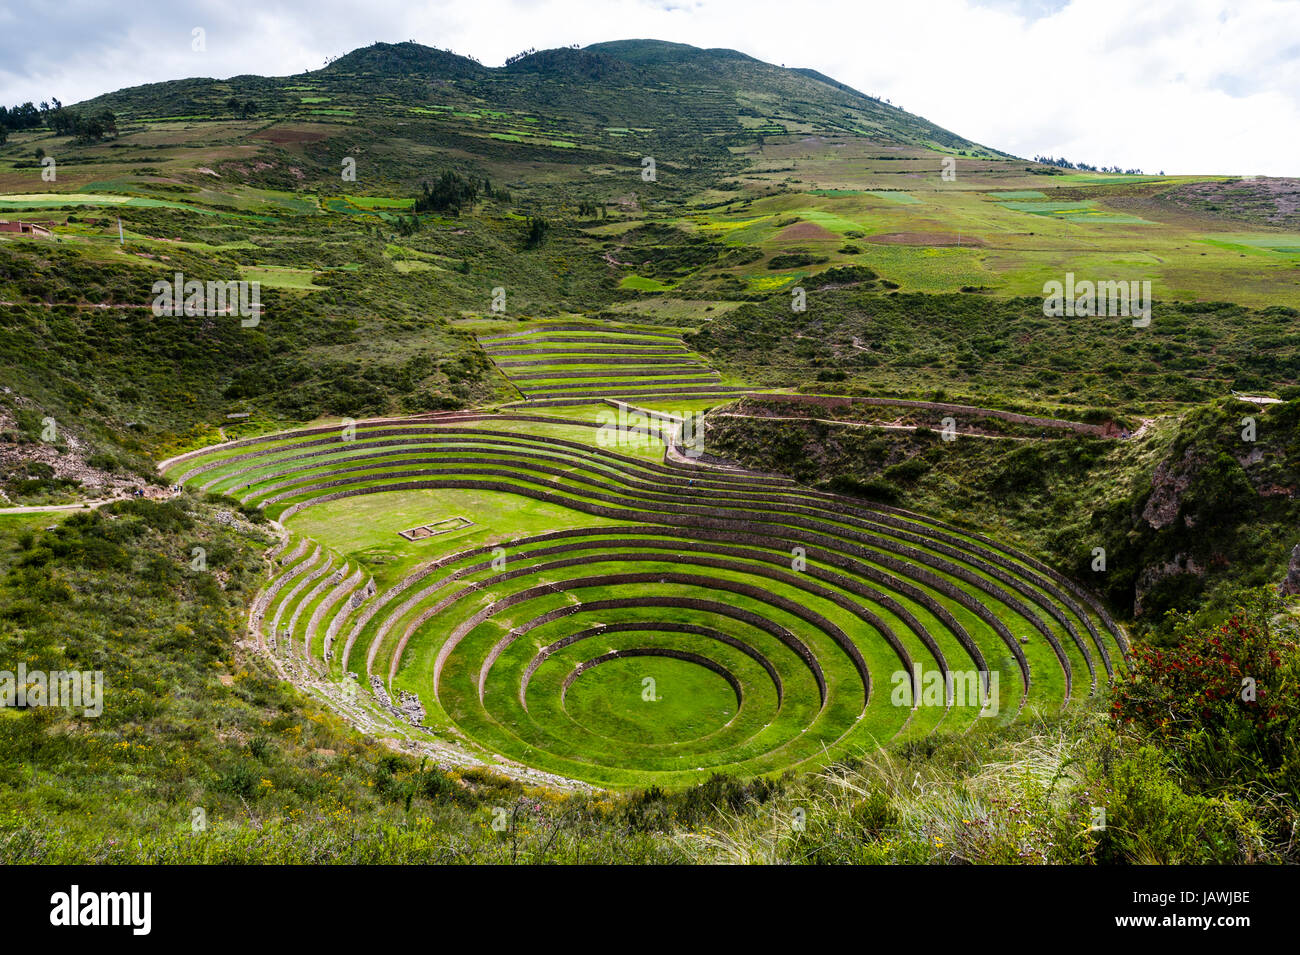 Un sitio Inca con muro de piedra de terrazas para el cultivo de cosechas agrícolas mediante la creación de microclimas. Foto de stock